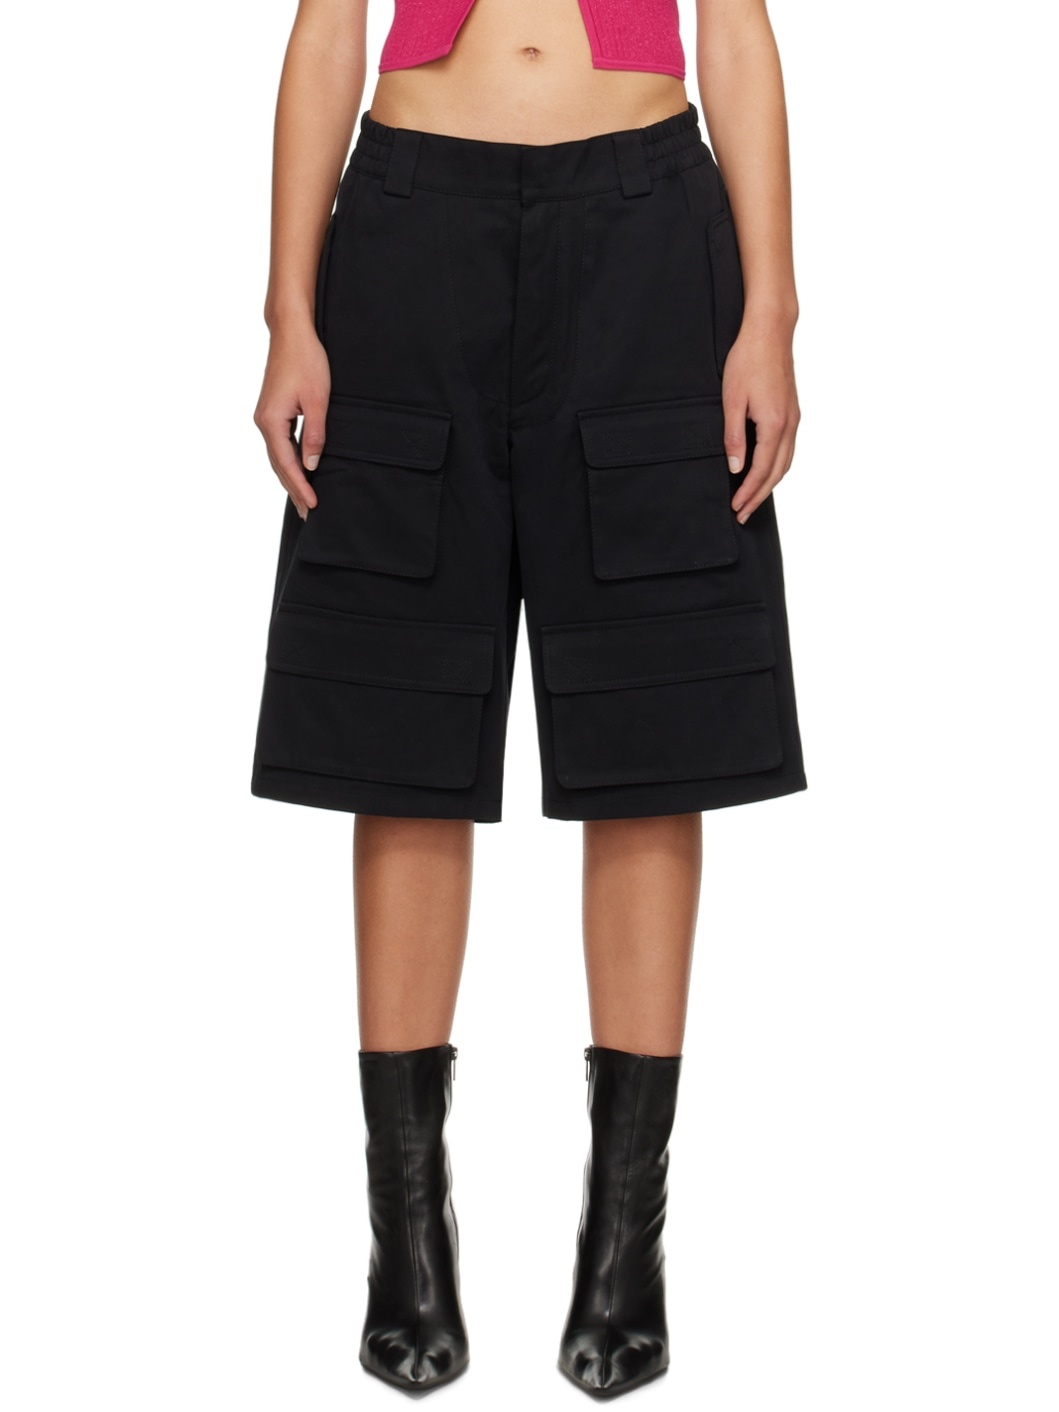 Black Four-Pocket Cargo Shorts - 1